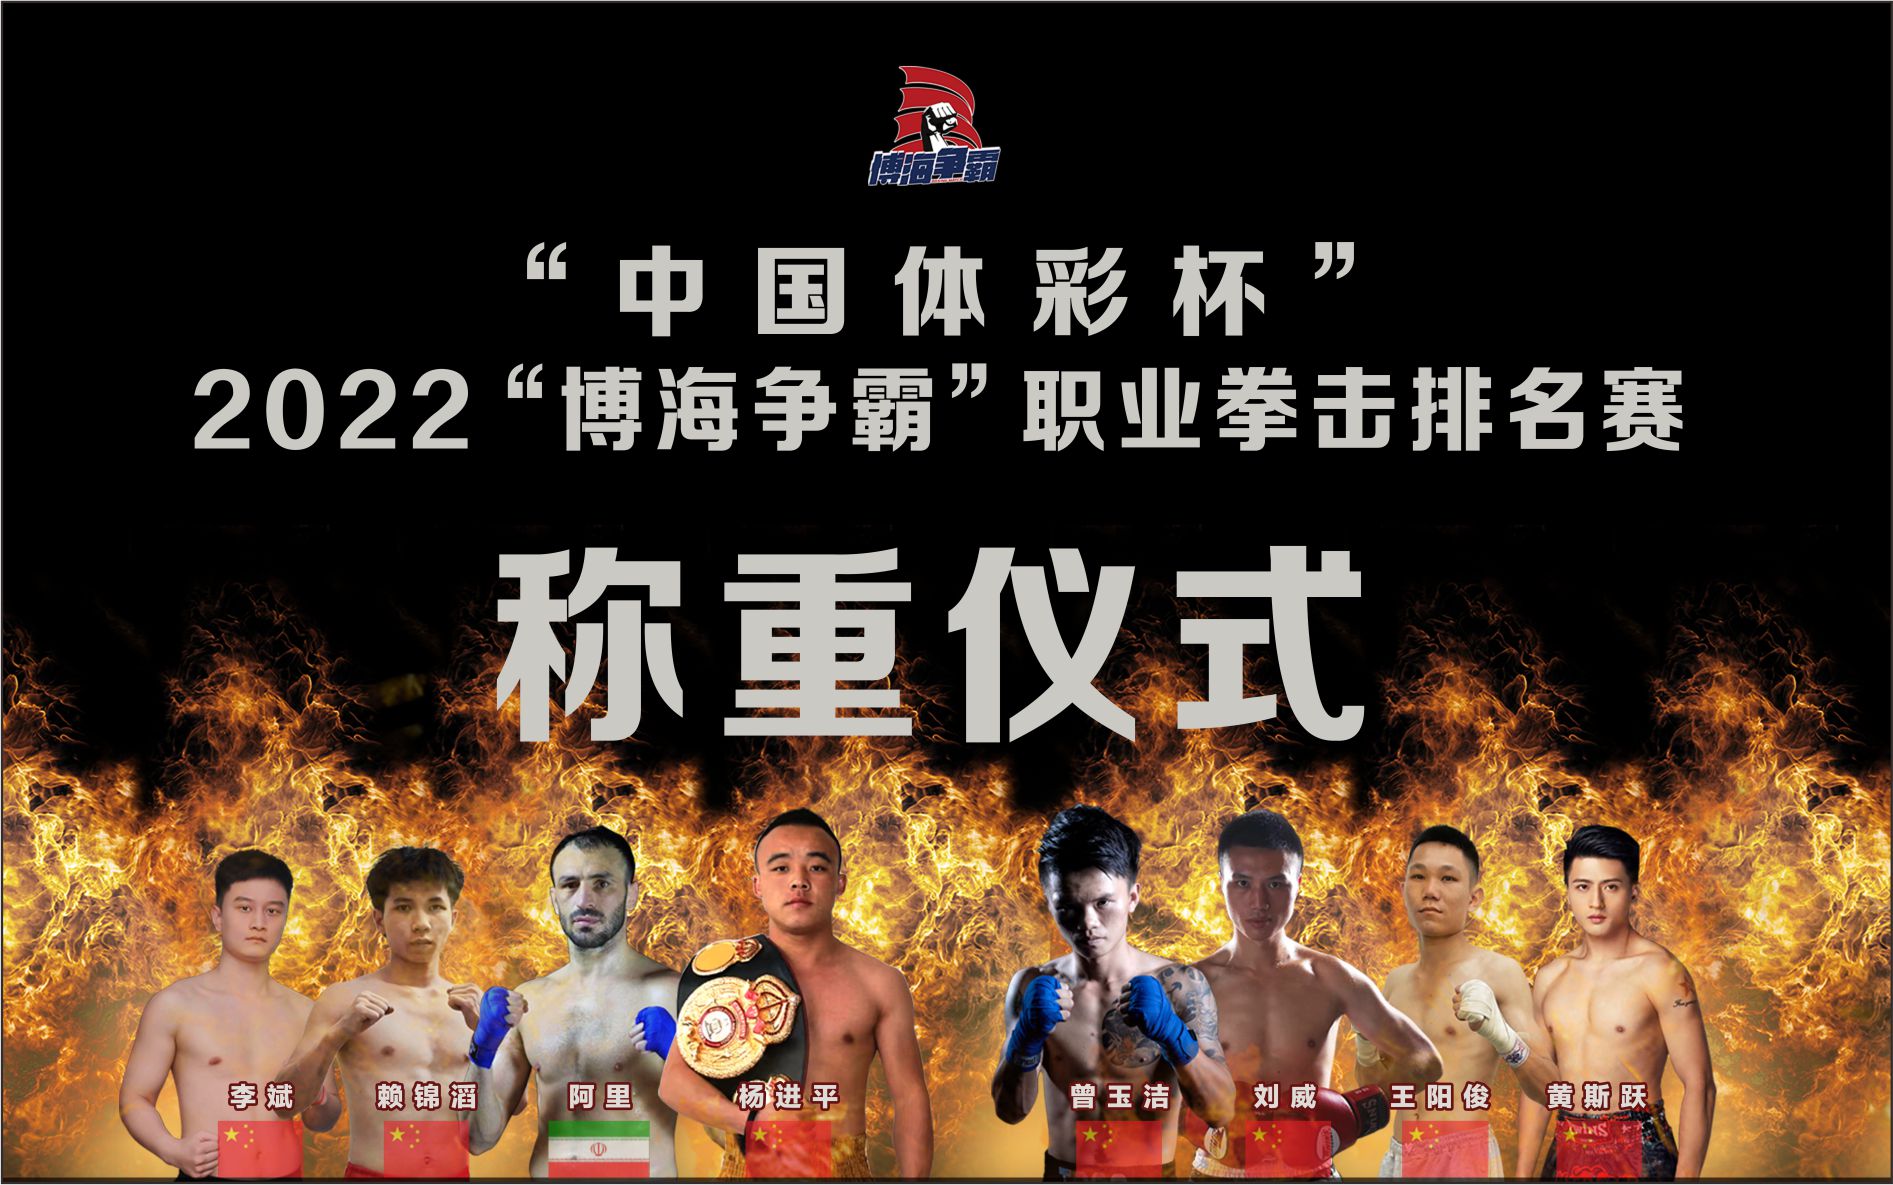 称重仪式 “中国体彩杯”2022“博海争霸”职业拳击排名赛